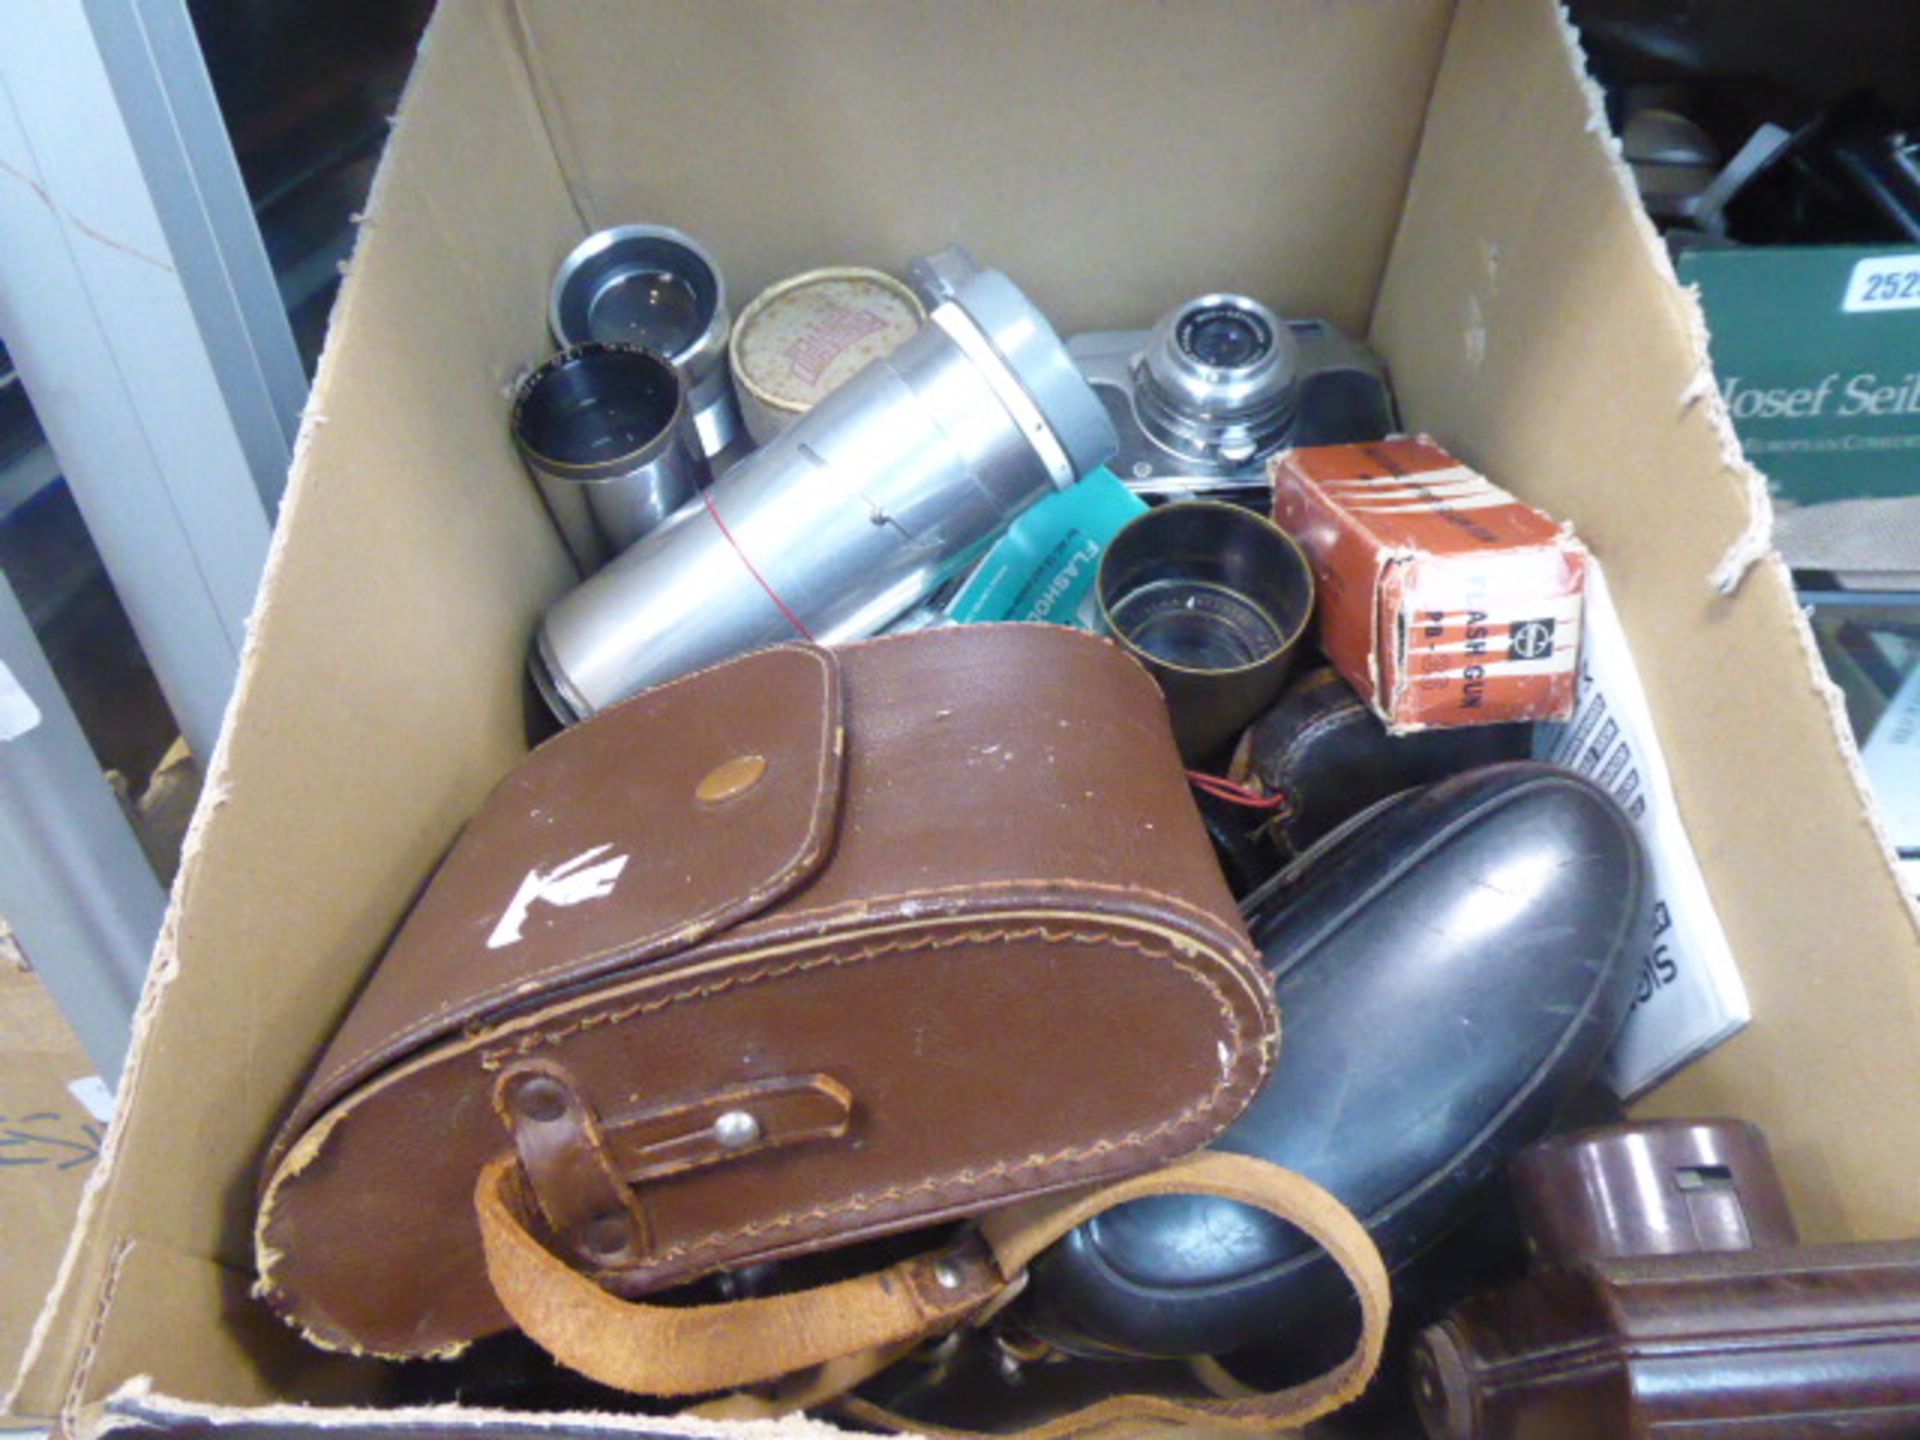 Box containing vintage film camera equipment